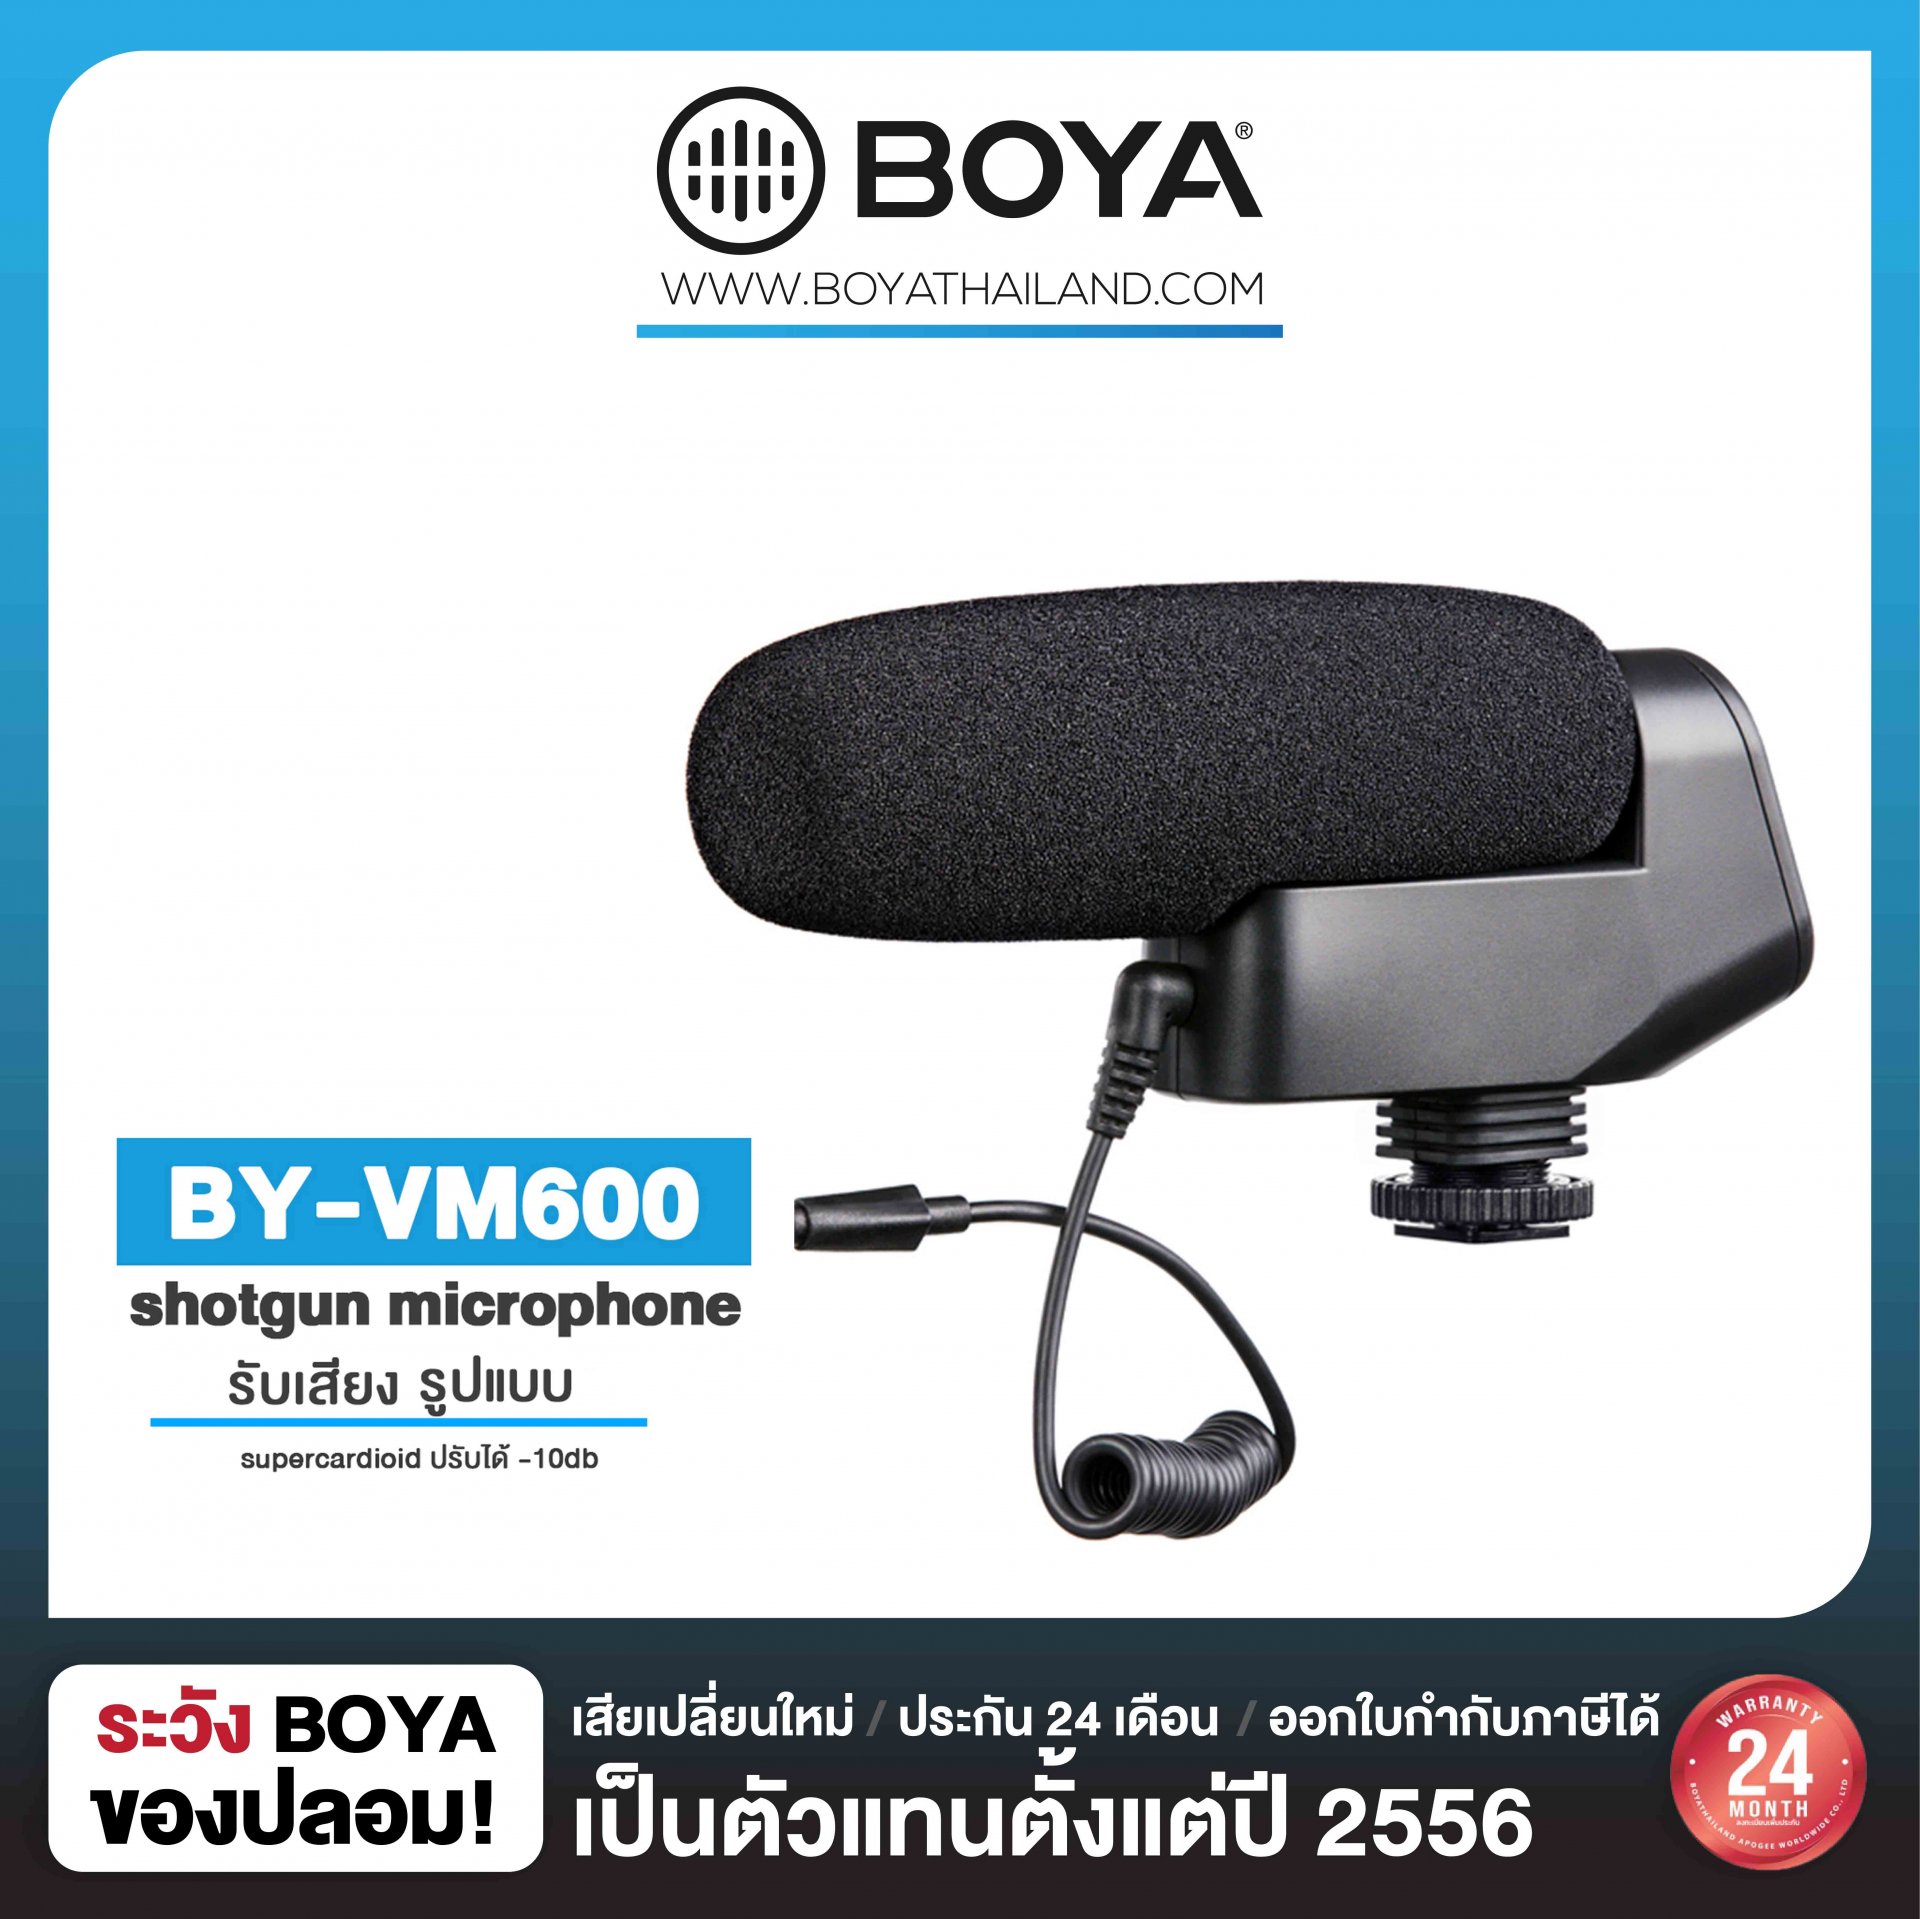 BOYA BY-VM600 Shotgun Microphone